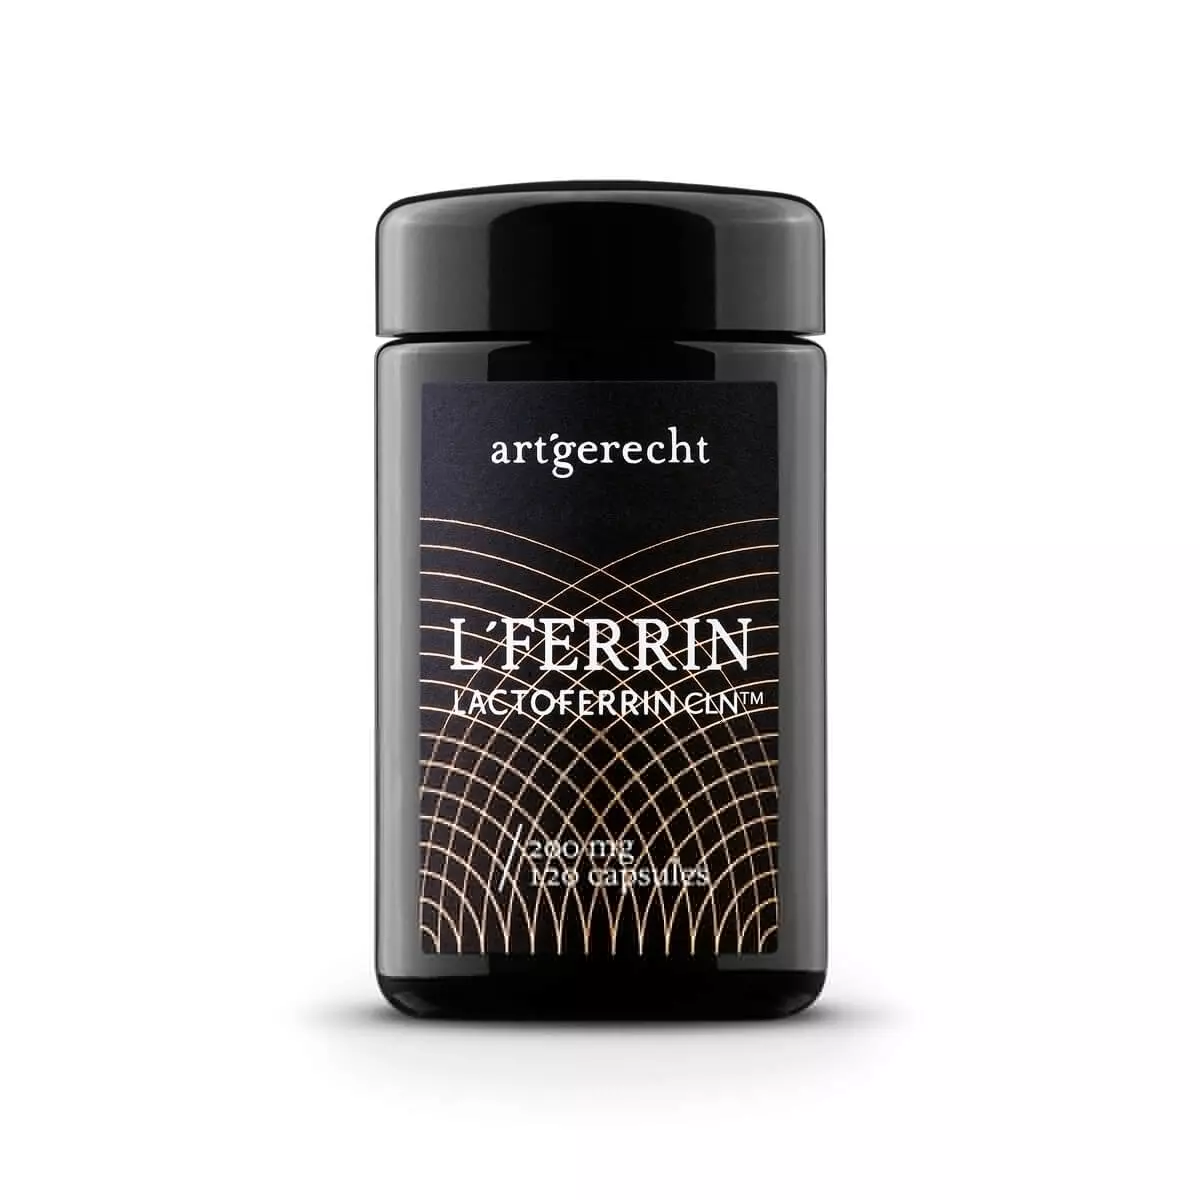 L'FERRIN - Lactoferrine CLN (Clean)